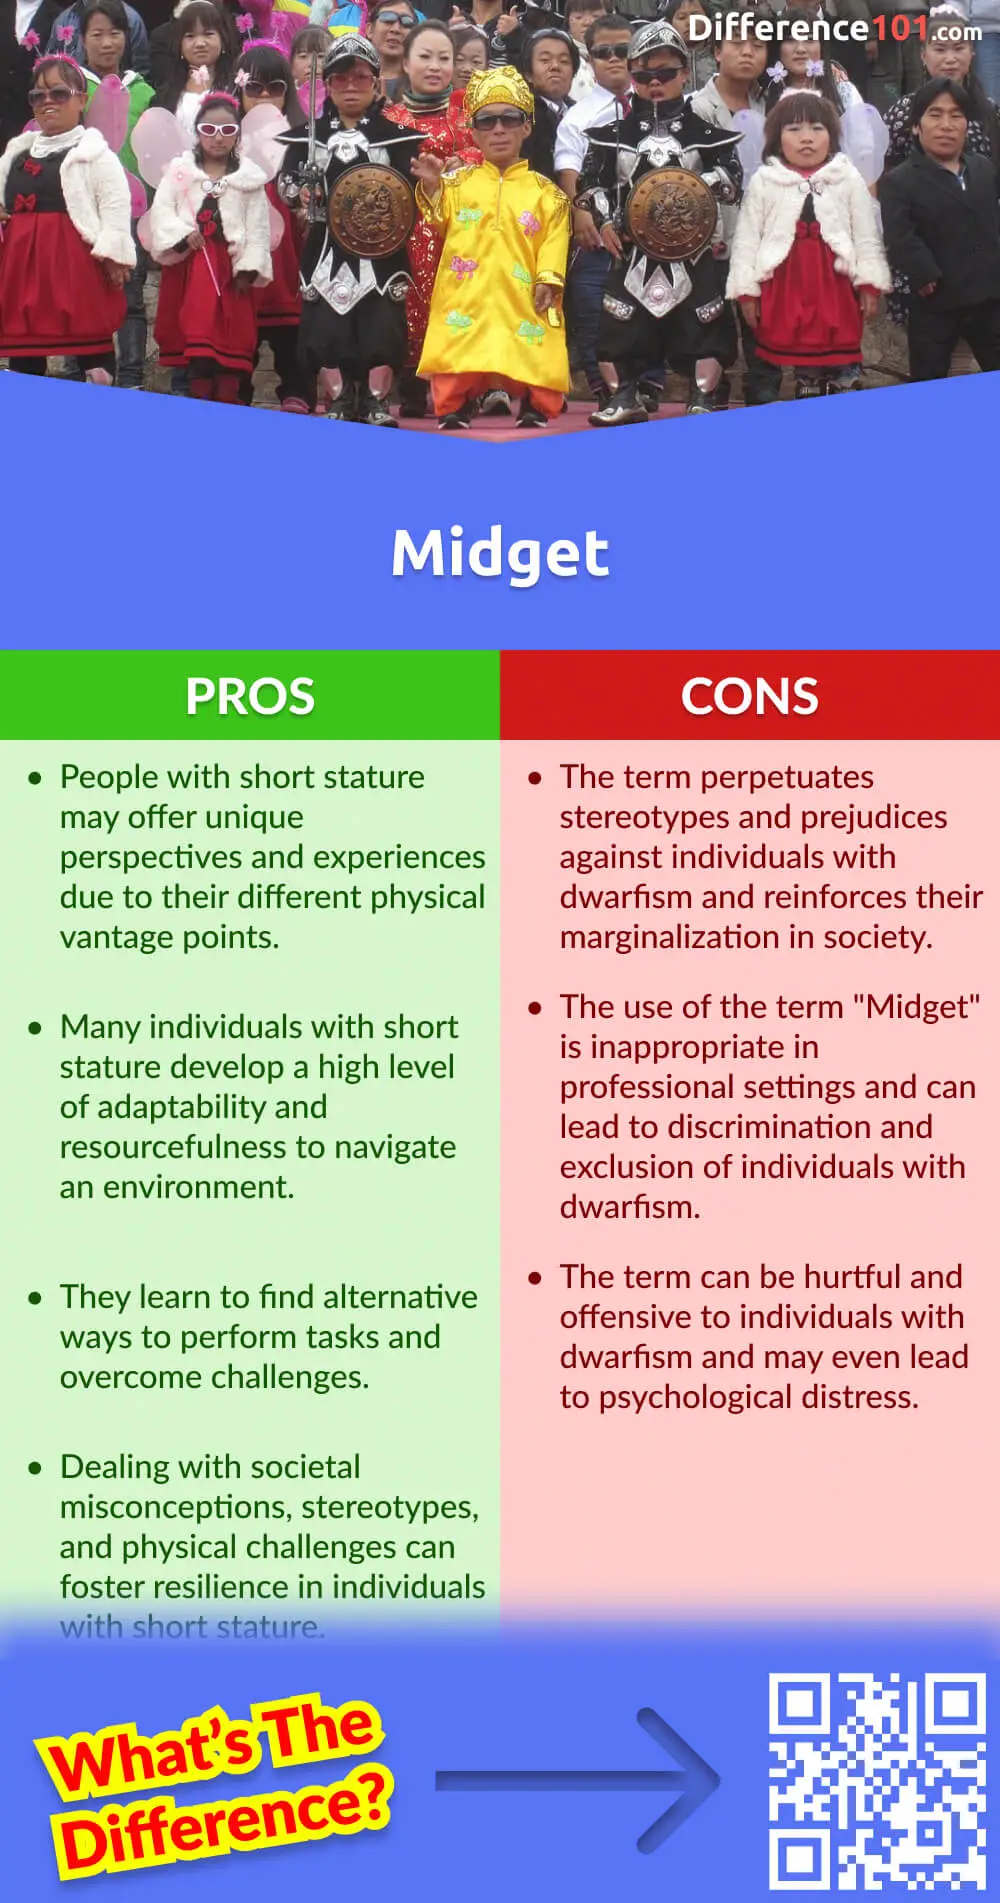 Midget Pros & Cons
